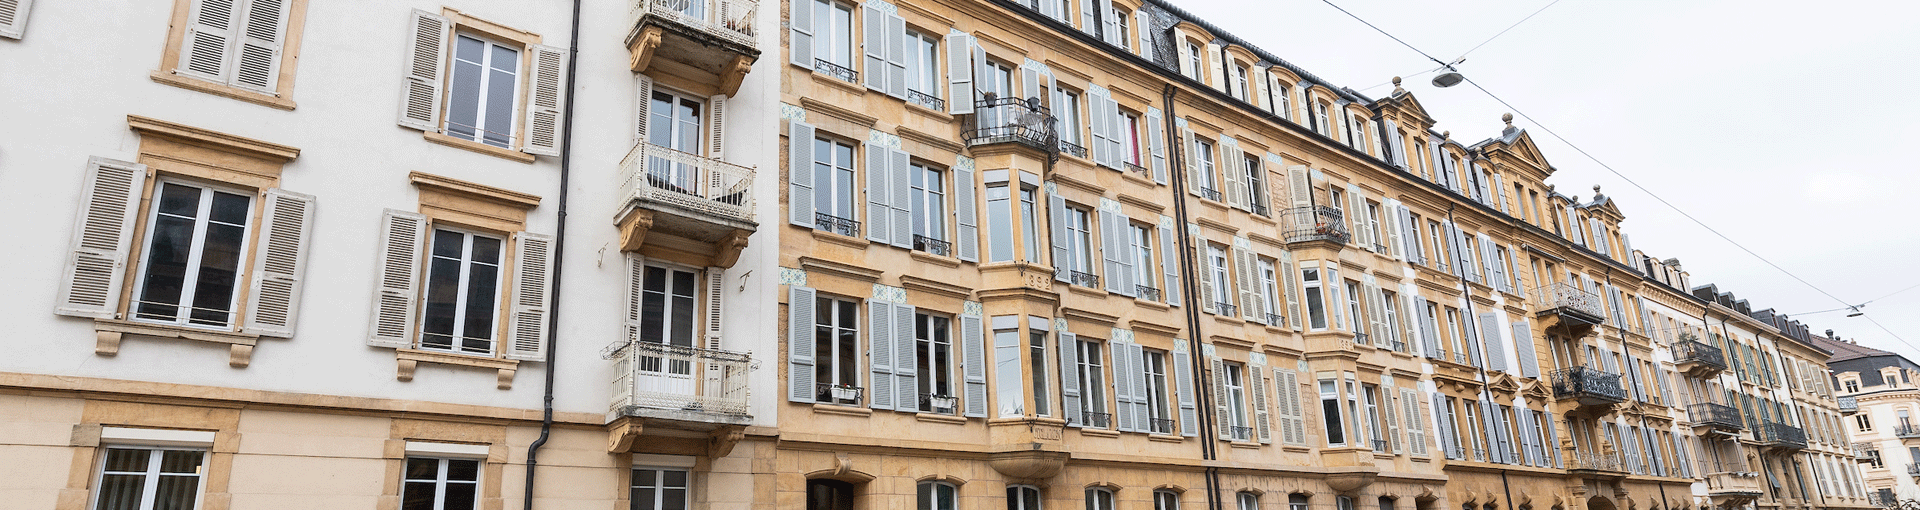 Un des immeubles illustrant les logements à louer à Neuchâtel